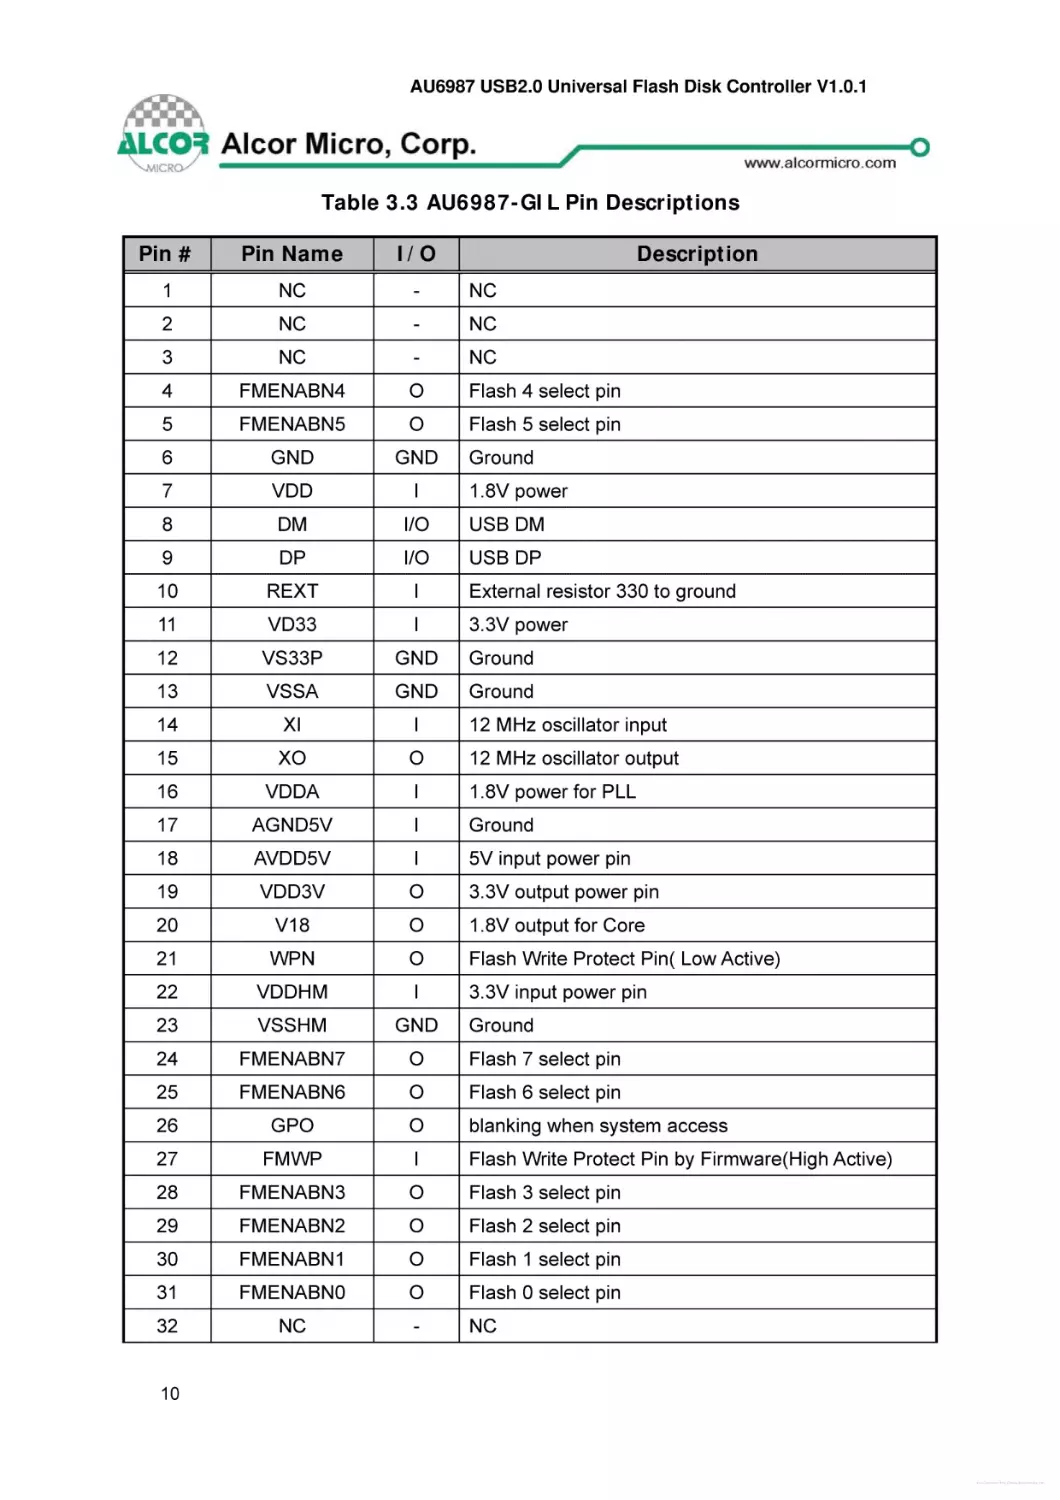 Table 3.3 AU6987-GIL Pin Descriptions